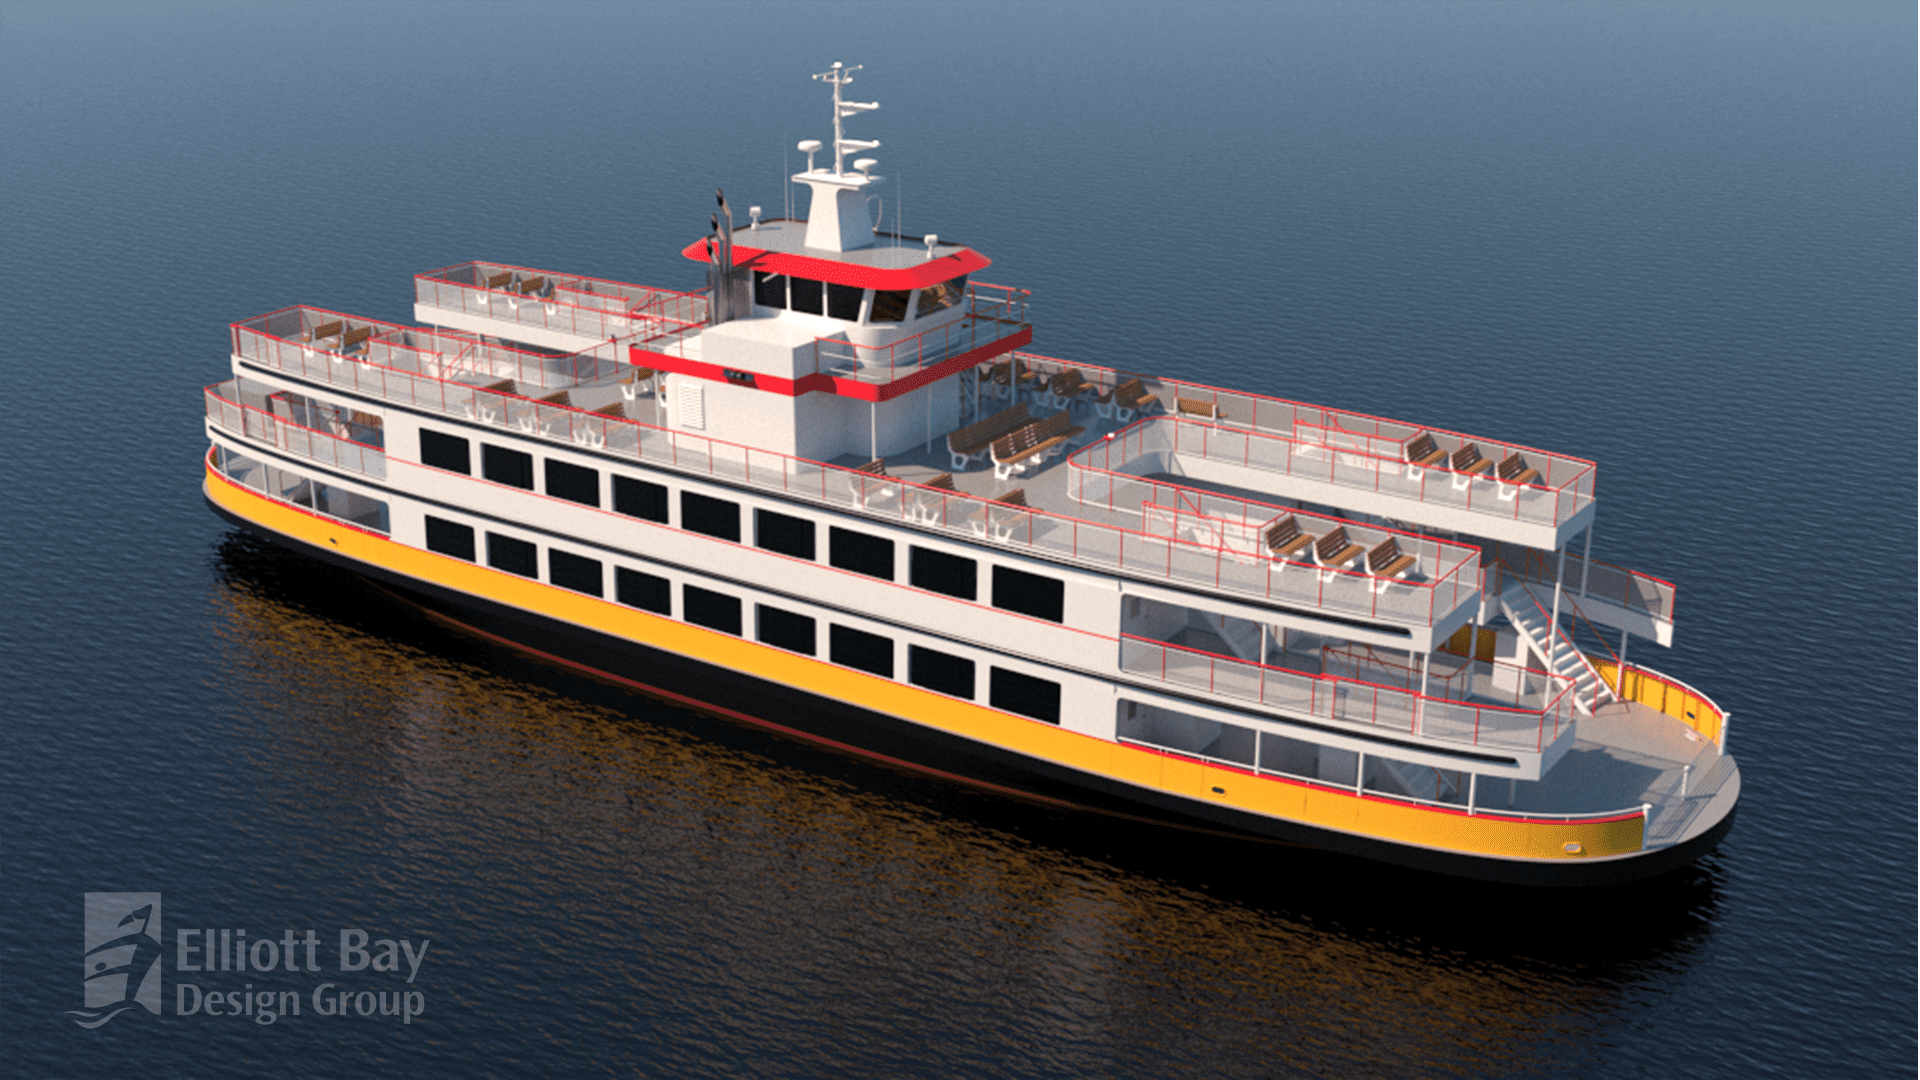 EBDG-Designed Ferry Enters Construction